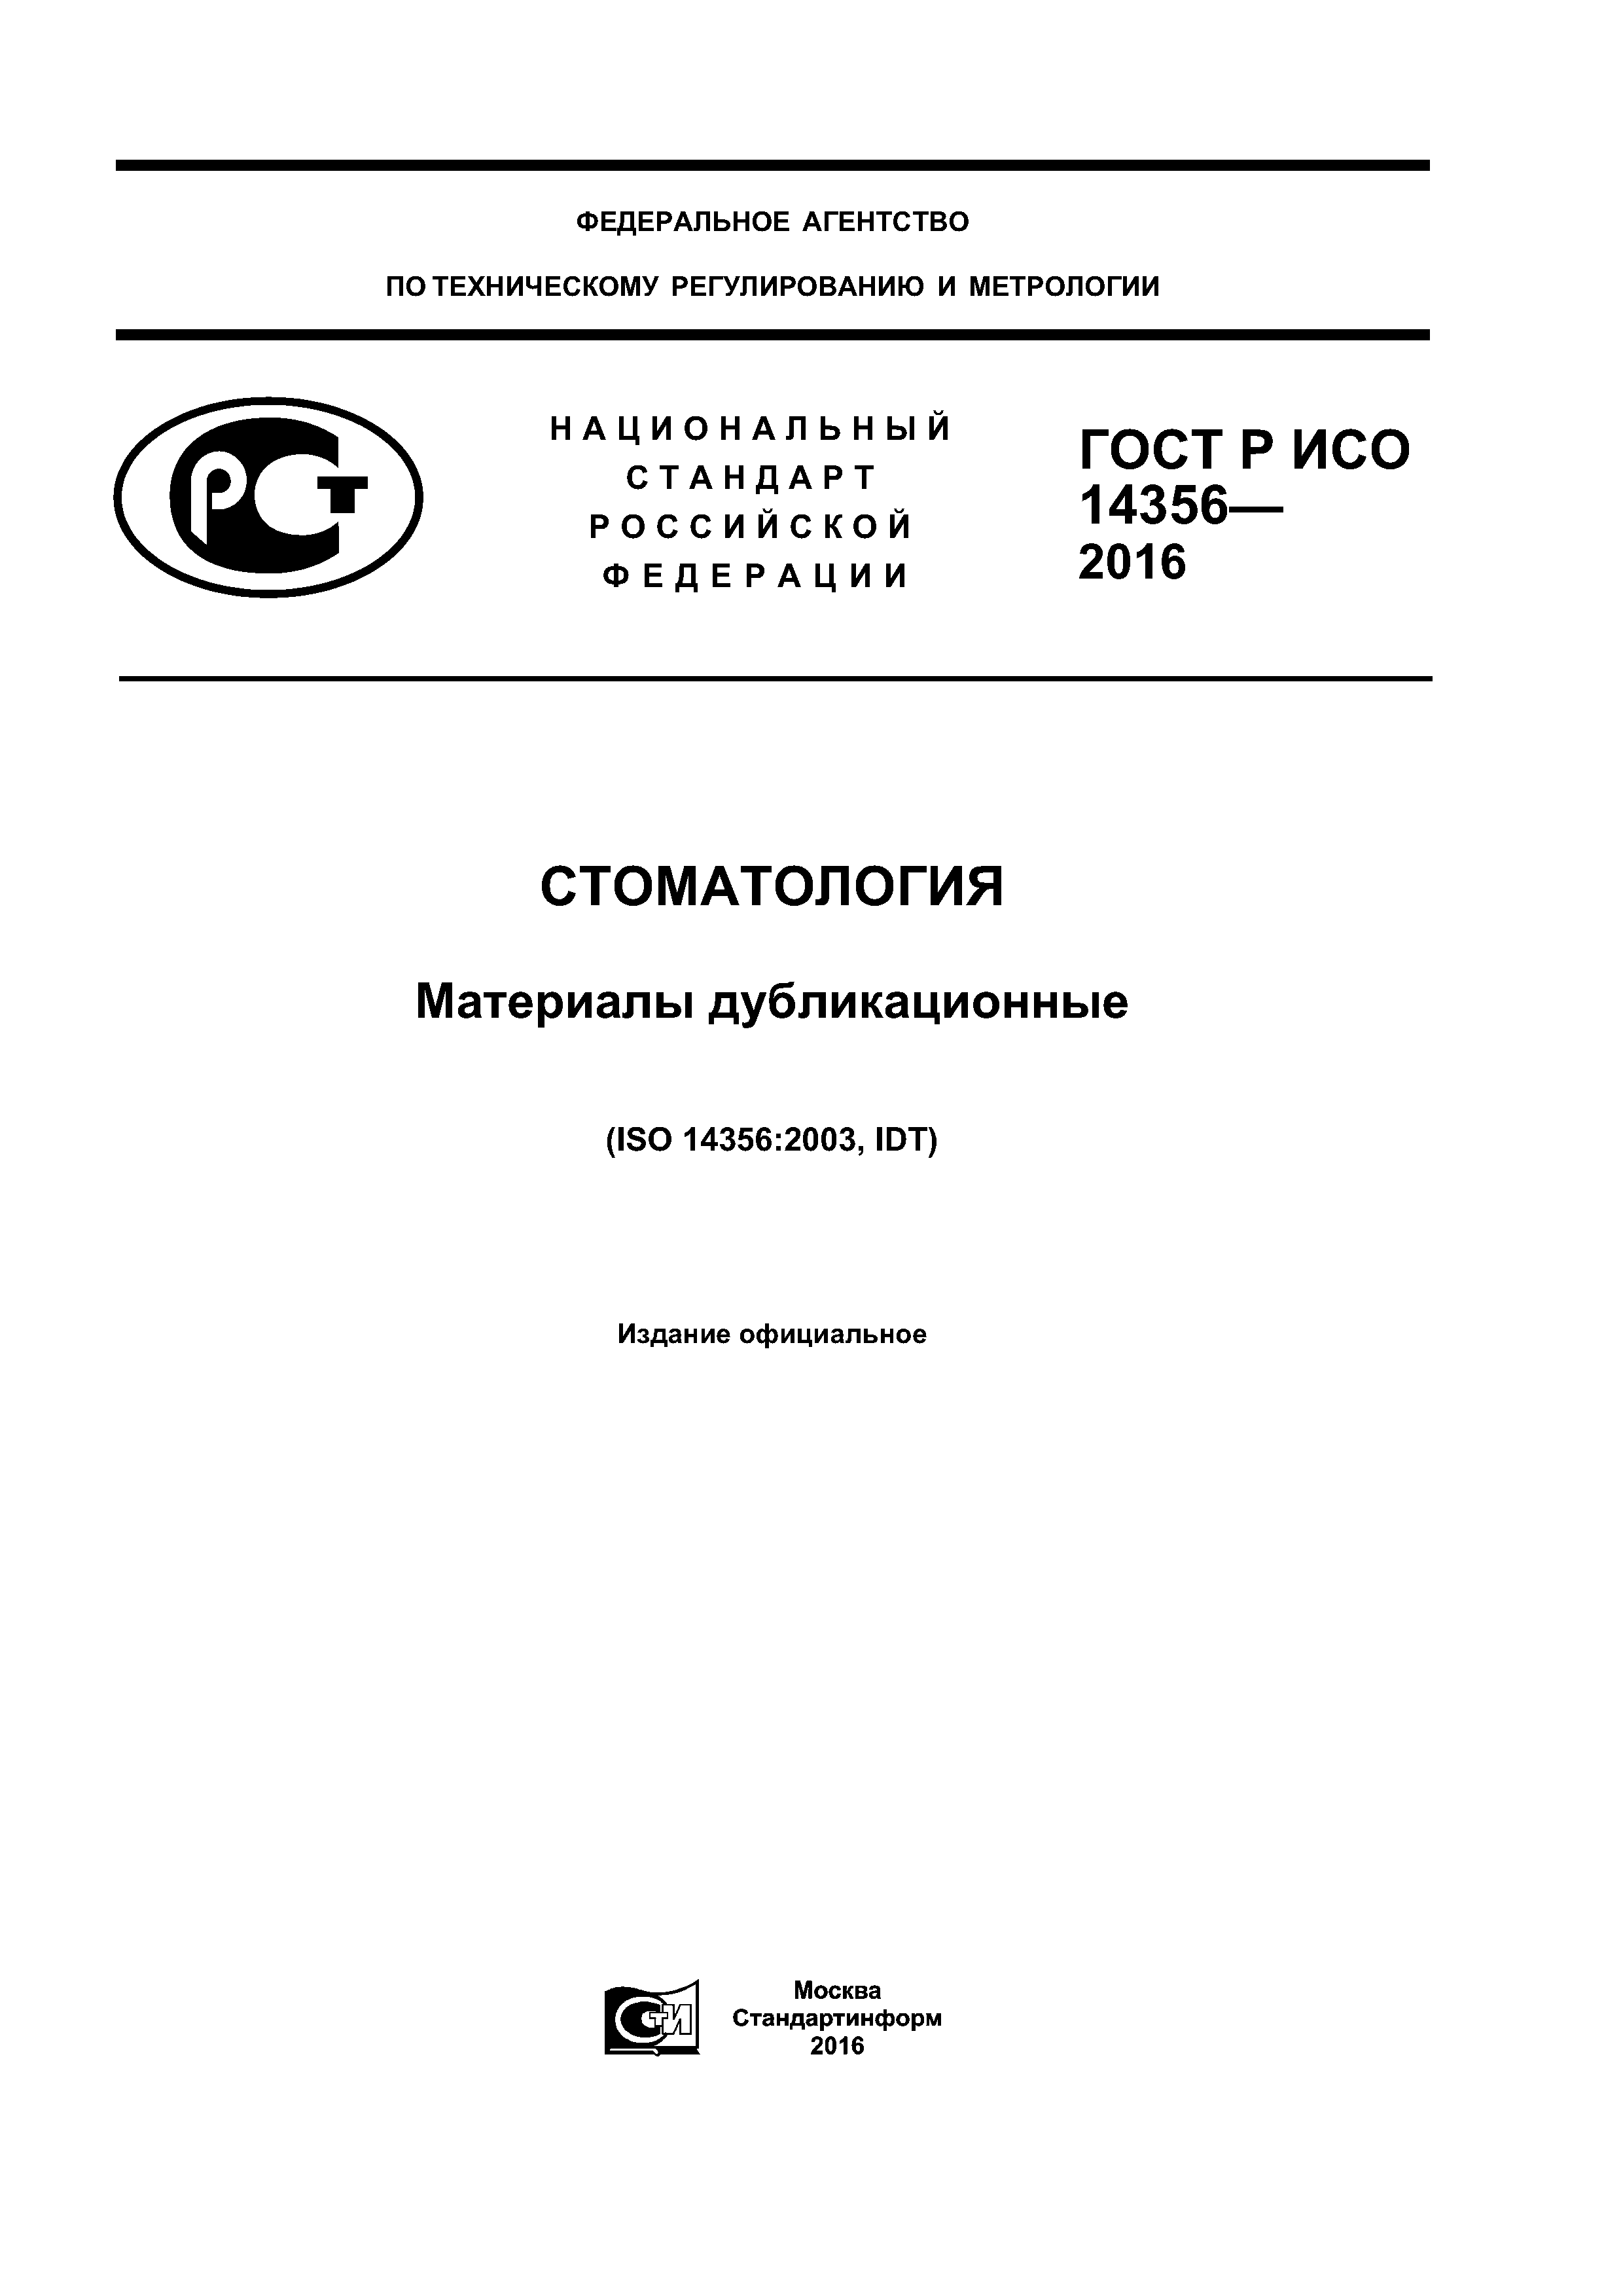 ГОСТ Р ИСО 14356-2016